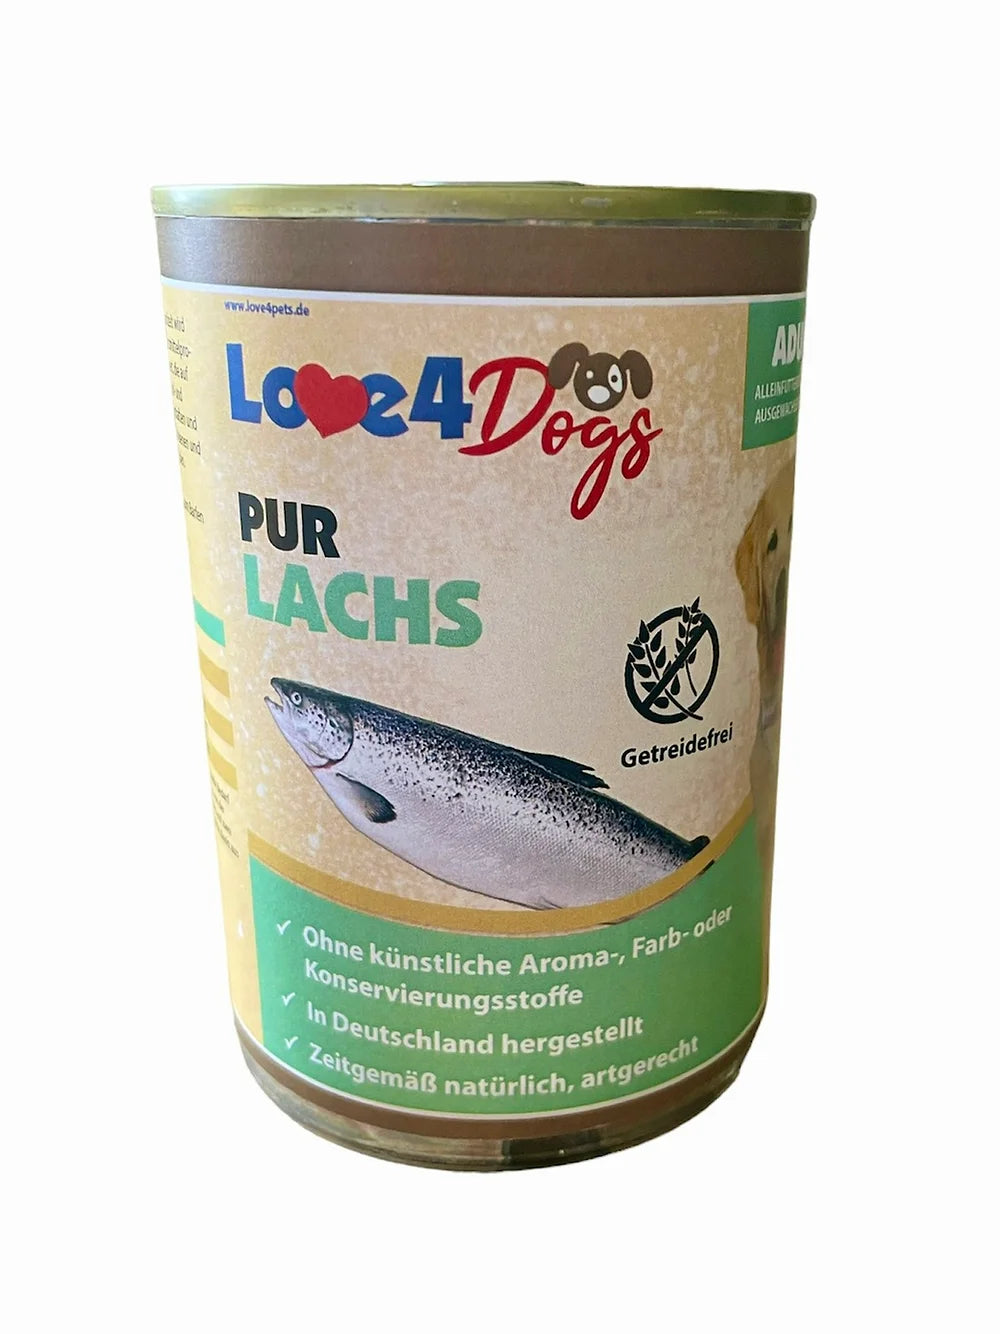 Love4Dog´s PUR Lachs 6x400gAlleinfuttermittel für ausgewachsene Hunde
 
6 Dosen a 400g (Nettogewicht)
 
Geeignet für alle Hunde oder zur Fütterung von sensiblen Hunden mit FuttermittelunverträLove4PetsPUR Lachs 6x400g